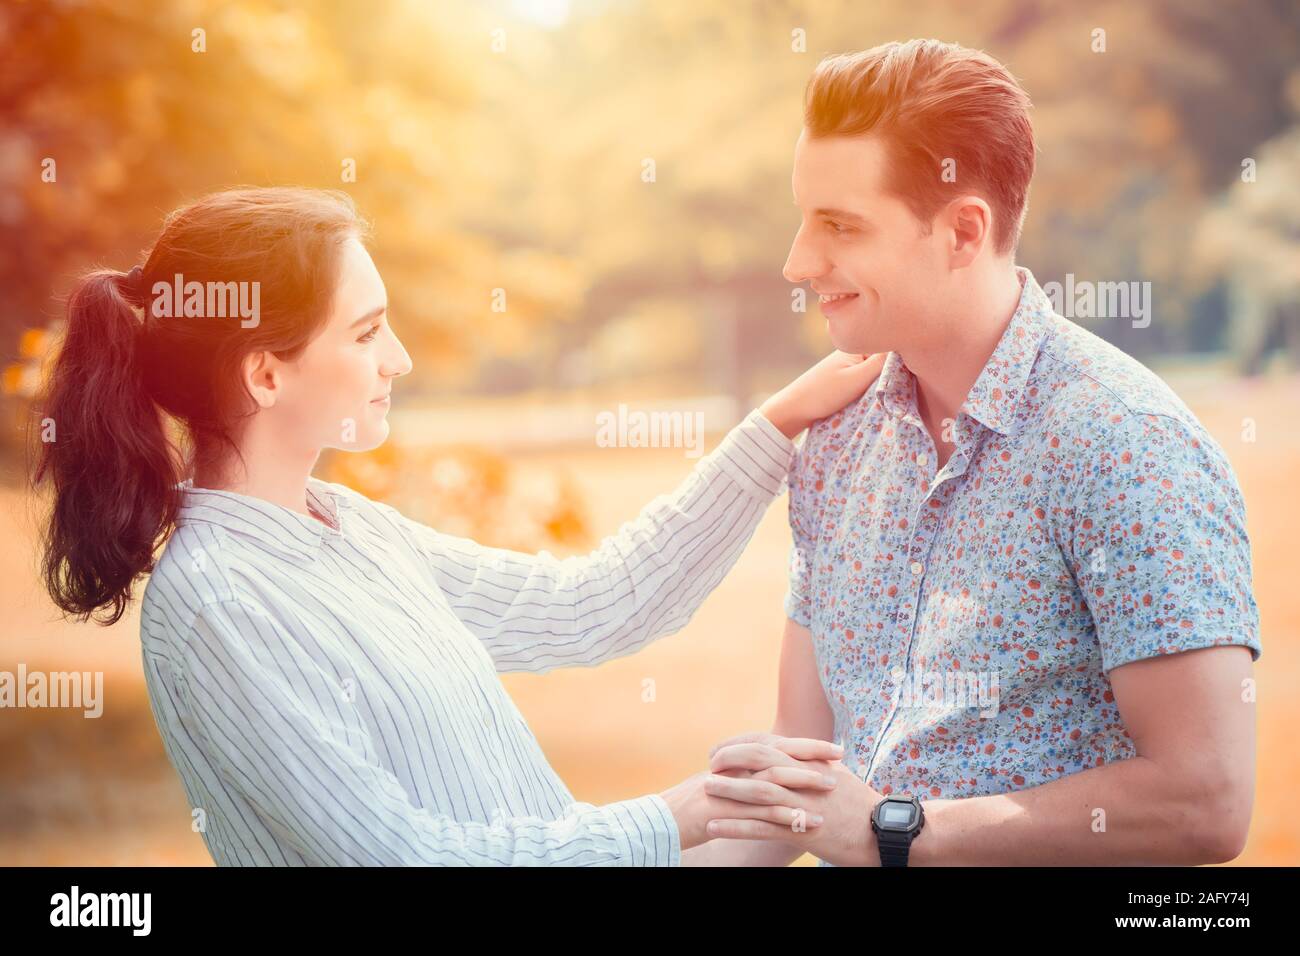 Paar Liebhaber Hände zusammen halten sie lächelnd in den Garten. Schöne romantische Moment der Liebe memory Bild. Stockfoto